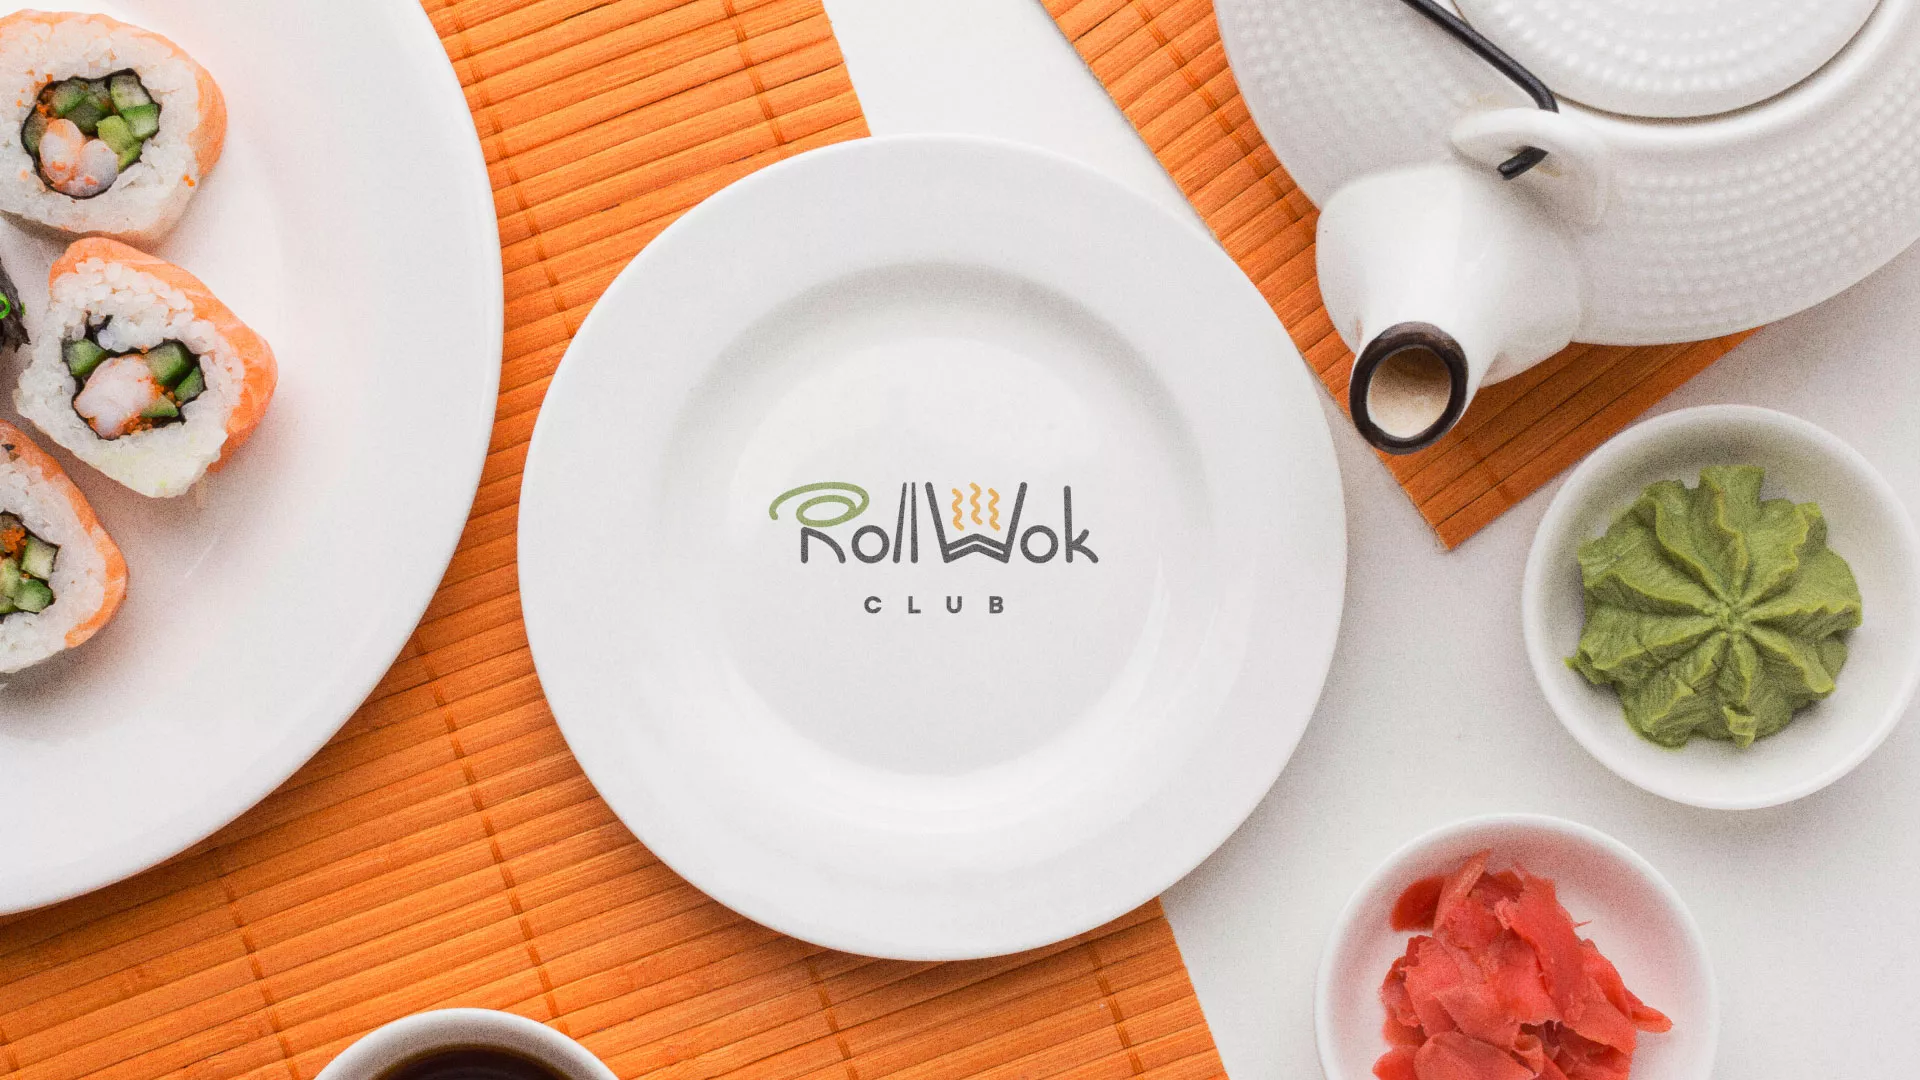 Разработка логотипа и фирменного стиля суши-бара «Roll Wok Club» в Новоаннинском